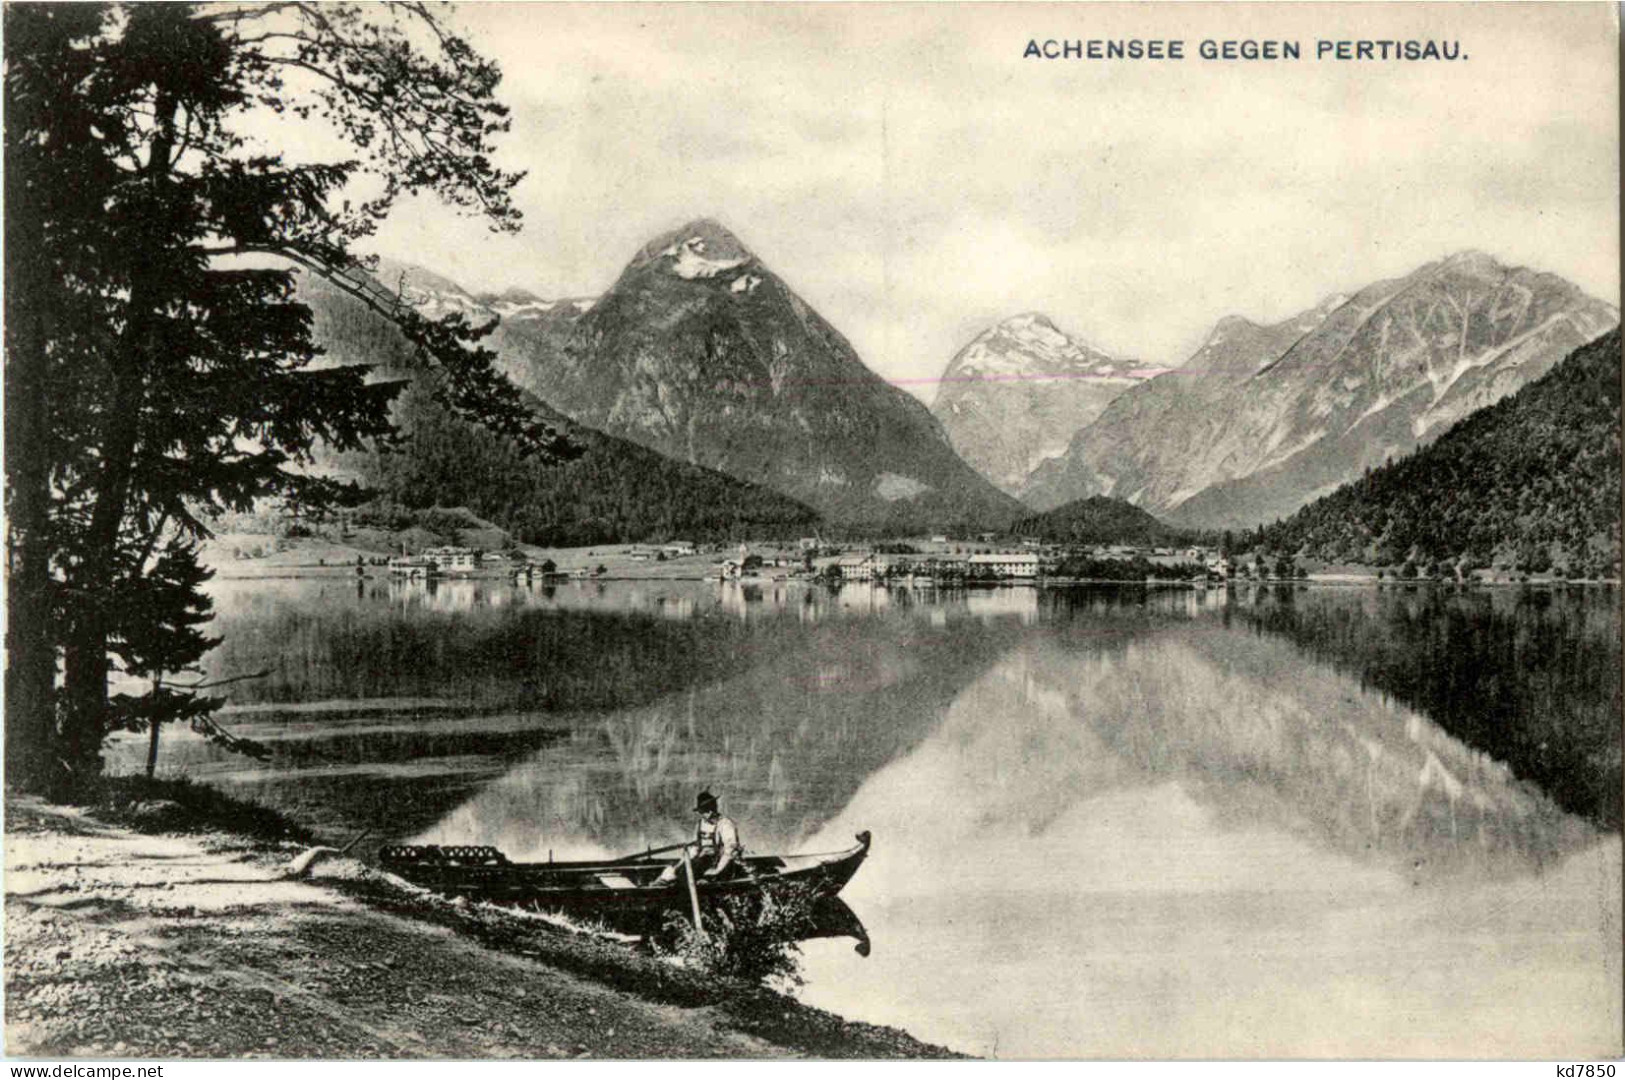 Achensee Gegen Pertisau - Achenseeorte